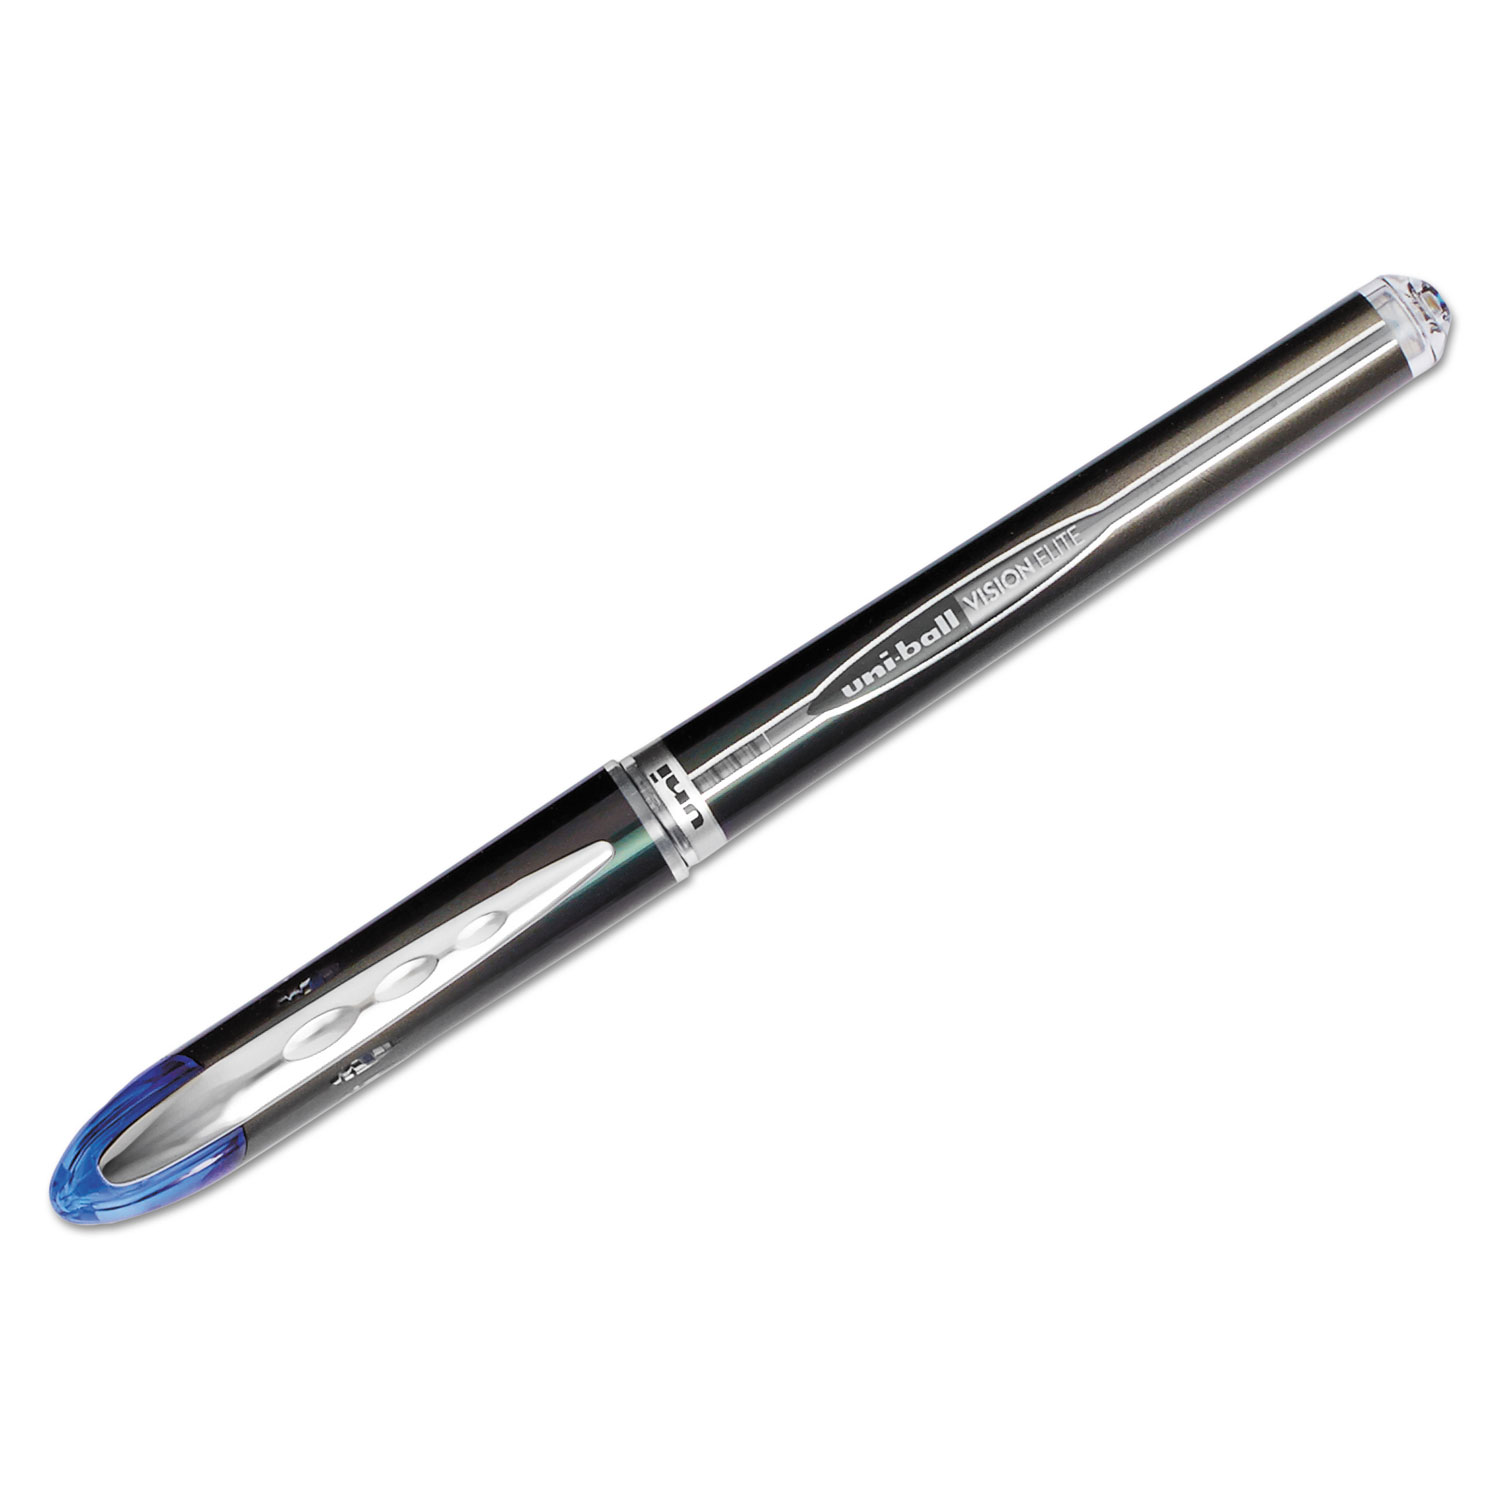  uni-ball 69021 VISION ELITE Stick Roller Ball Pen, Super-Fine 0.5mm, Blue Ink, Blue Barrel (UBC69021) 